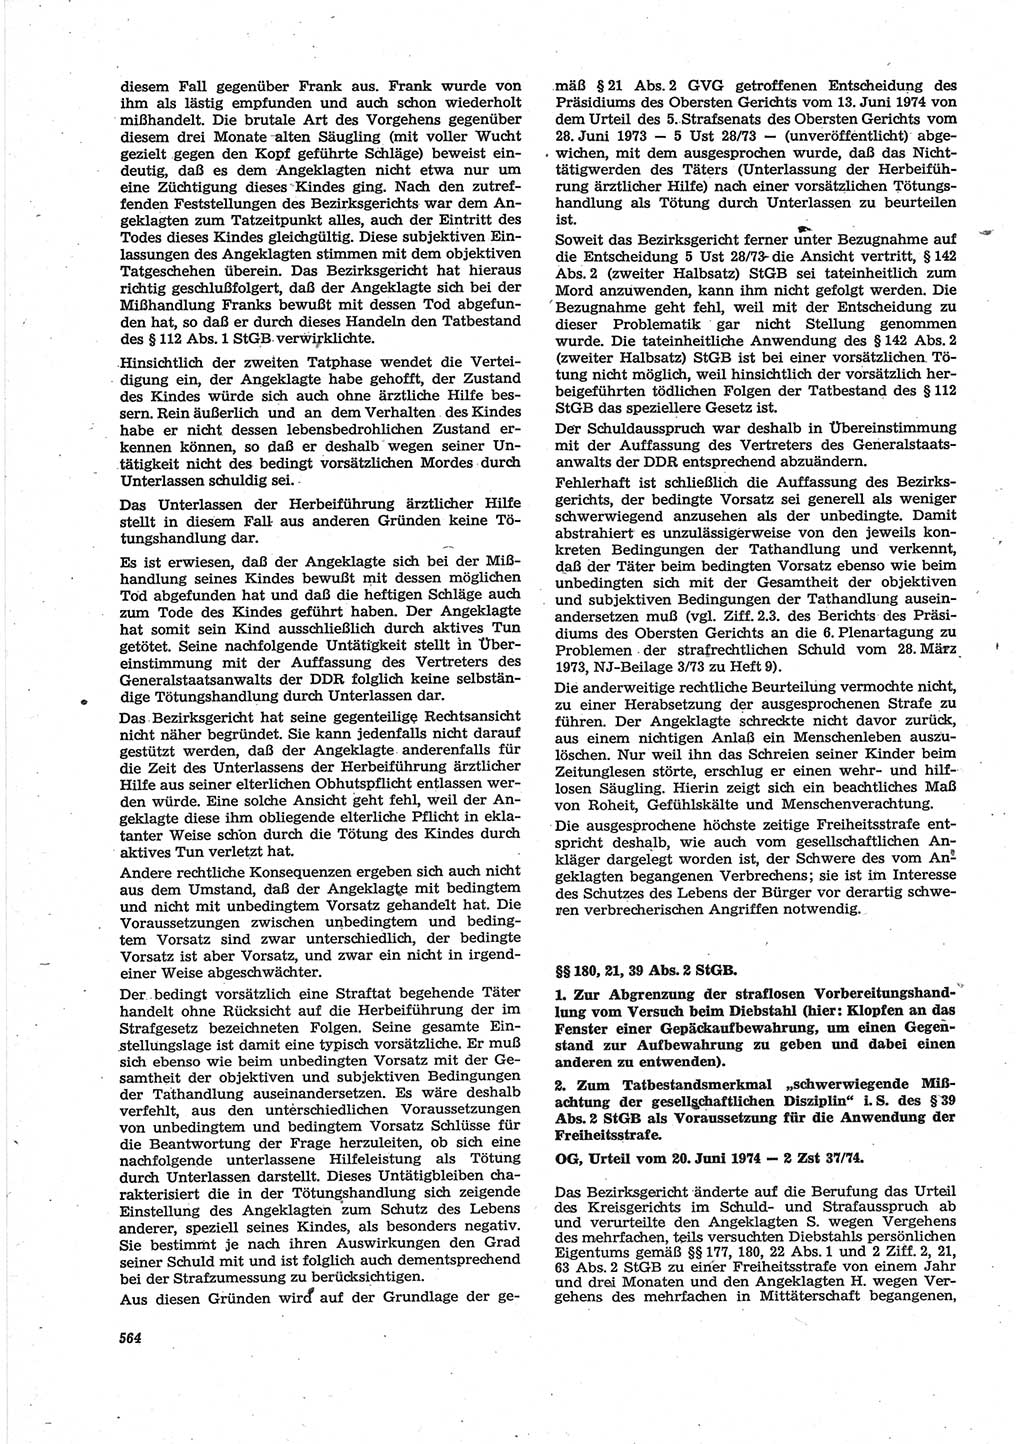 Neue Justiz (NJ), Zeitschrift für Recht und Rechtswissenschaft [Deutsche Demokratische Republik (DDR)], 28. Jahrgang 1974, Seite 564 (NJ DDR 1974, S. 564)